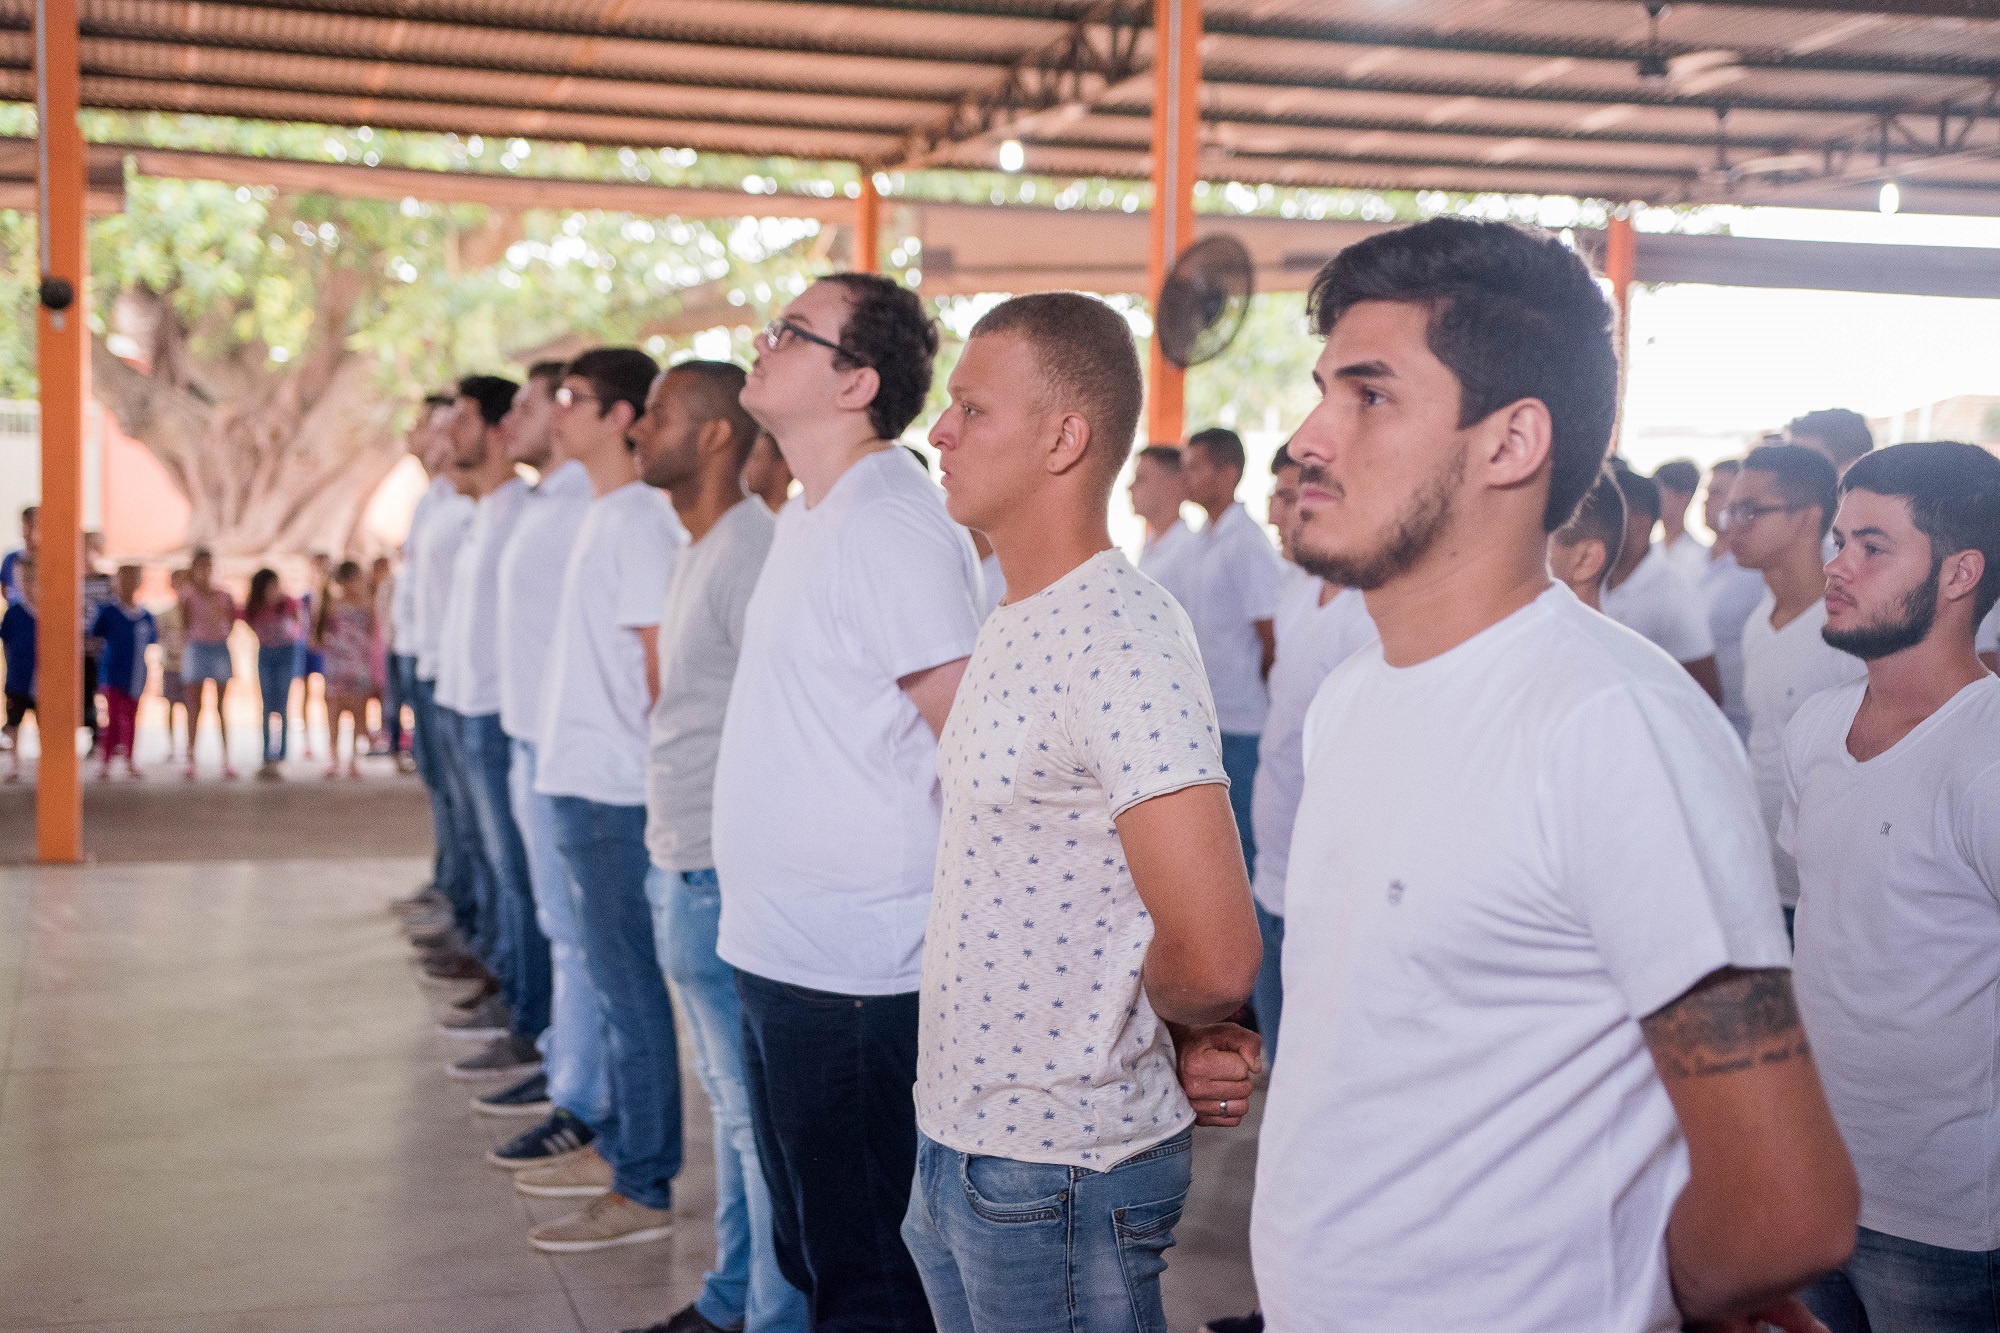 Jovens receberam certificado de dispensa nesta sexta-feira (14). Foto: Luís Fernando da Silva / Prefeitura Municipal de Urupês.